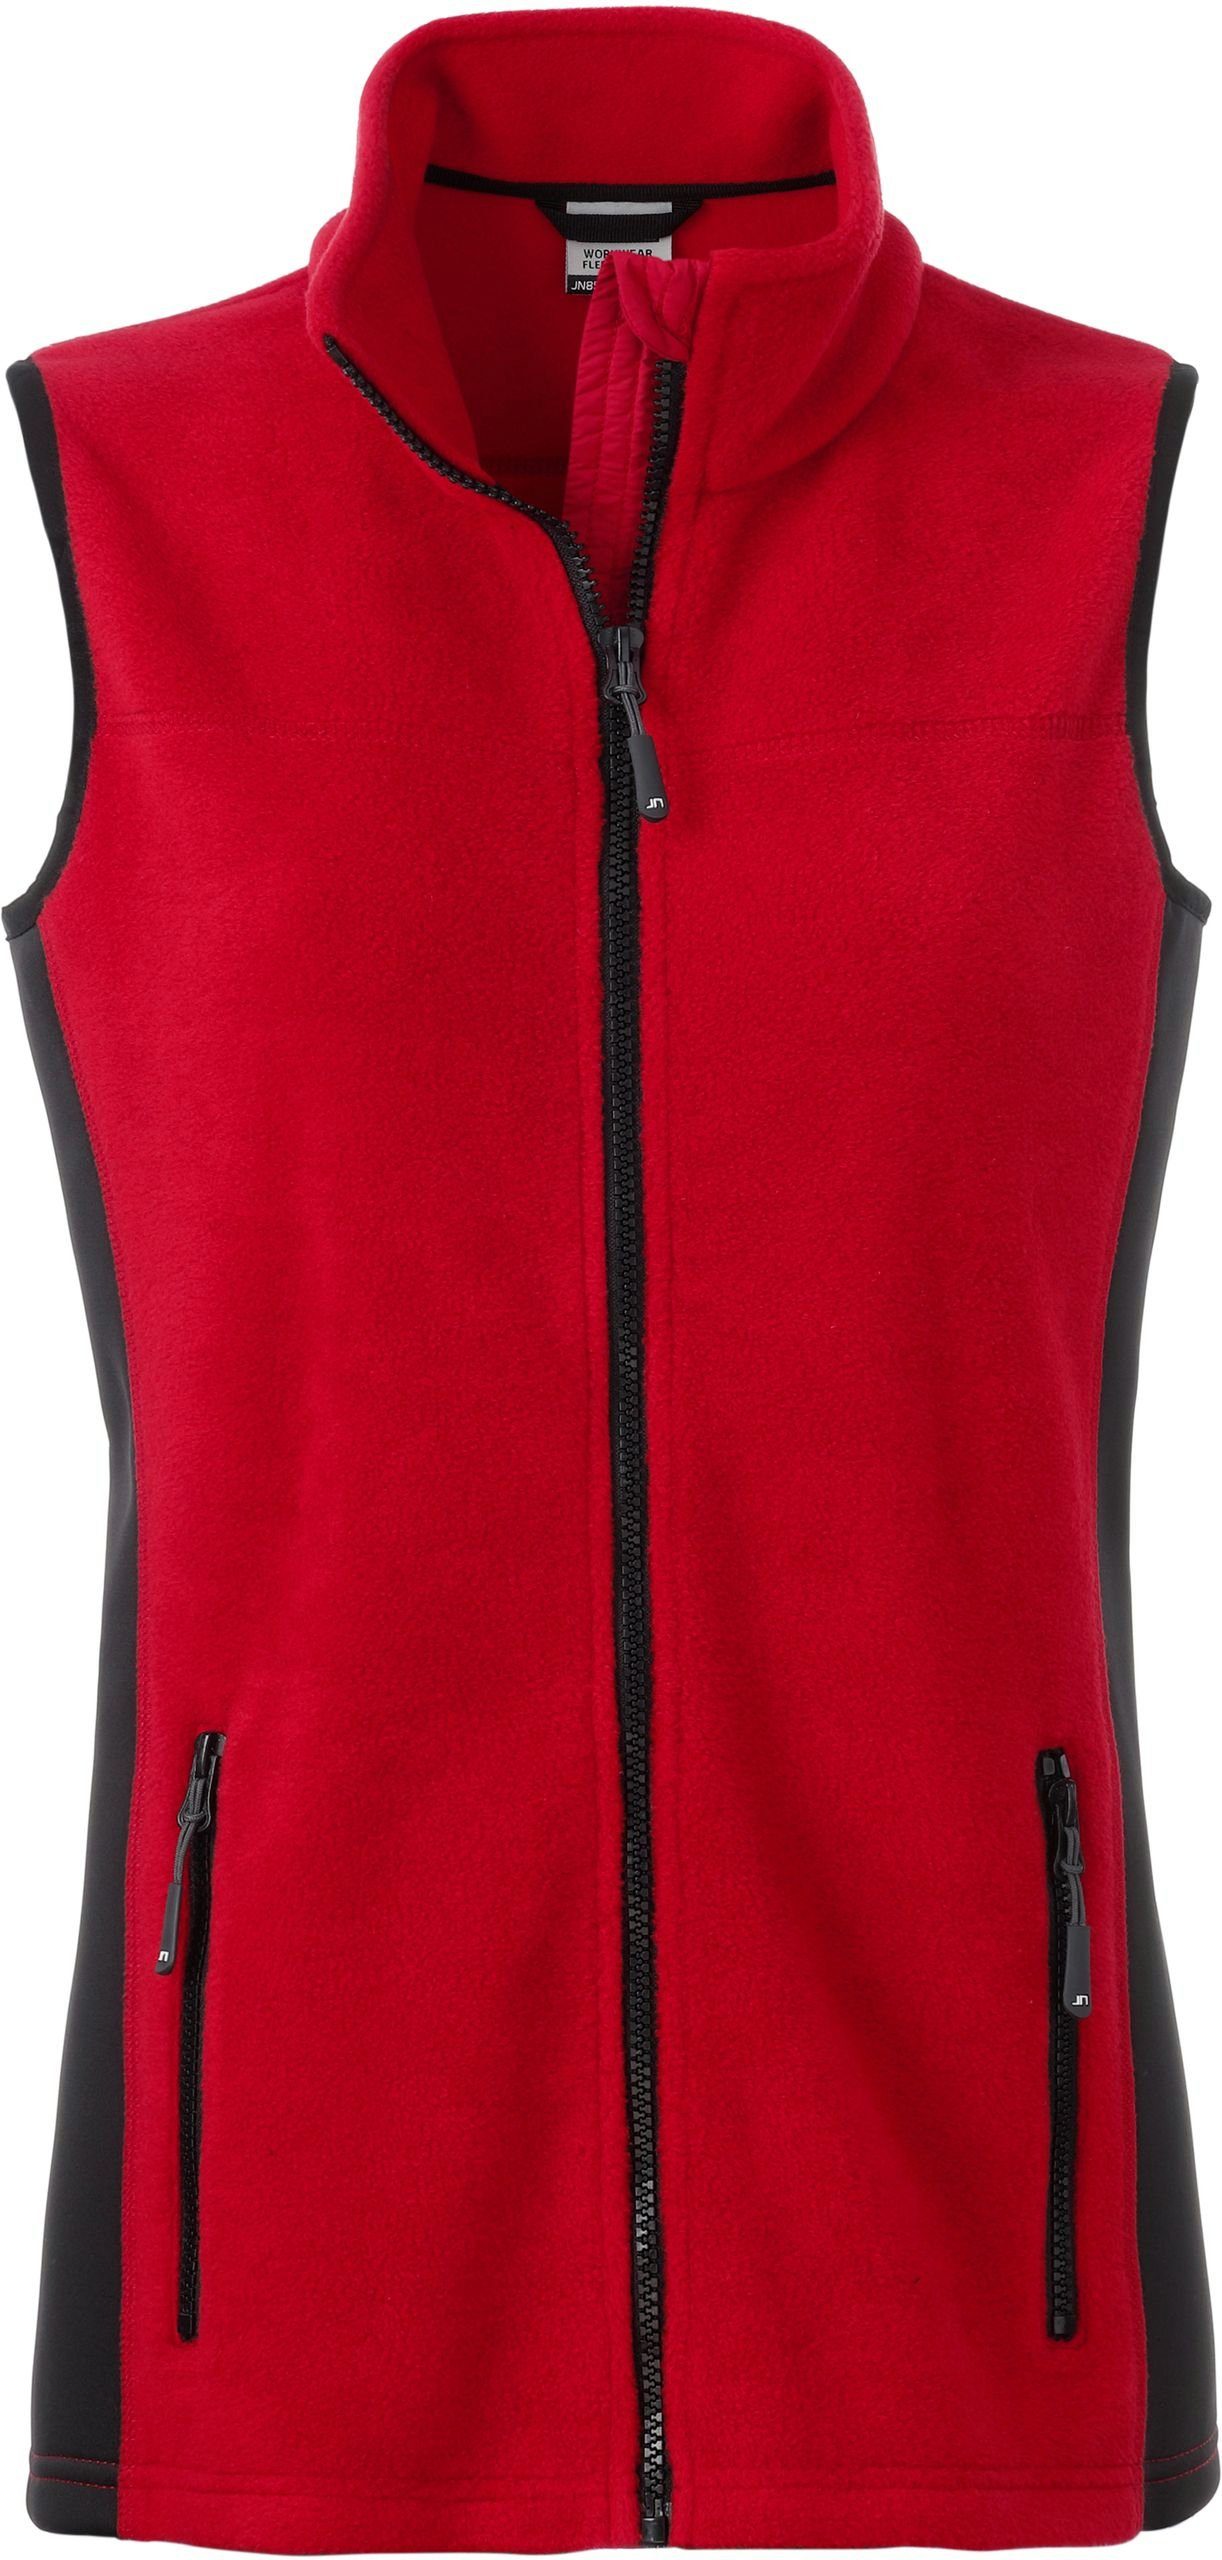 Nicholson Weste Gilet Fleece James & FaS50855 Workwear Fleeceweste RED/BLACK